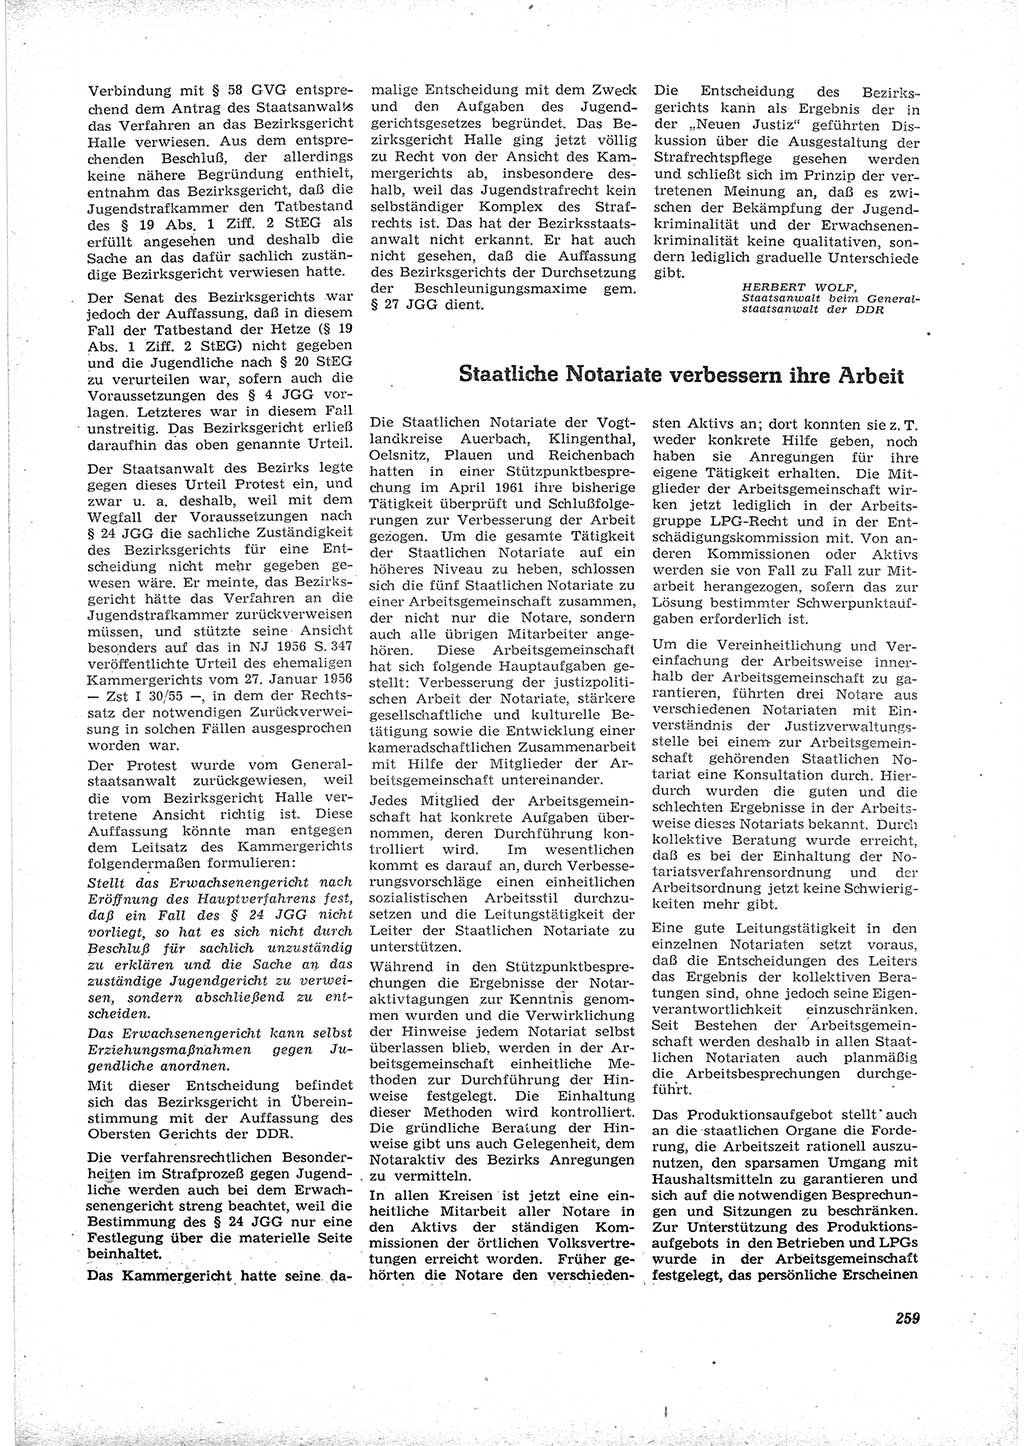 Neue Justiz (NJ), Zeitschrift für Recht und Rechtswissenschaft [Deutsche Demokratische Republik (DDR)], 16. Jahrgang 1962, Seite 259 (NJ DDR 1962, S. 259)